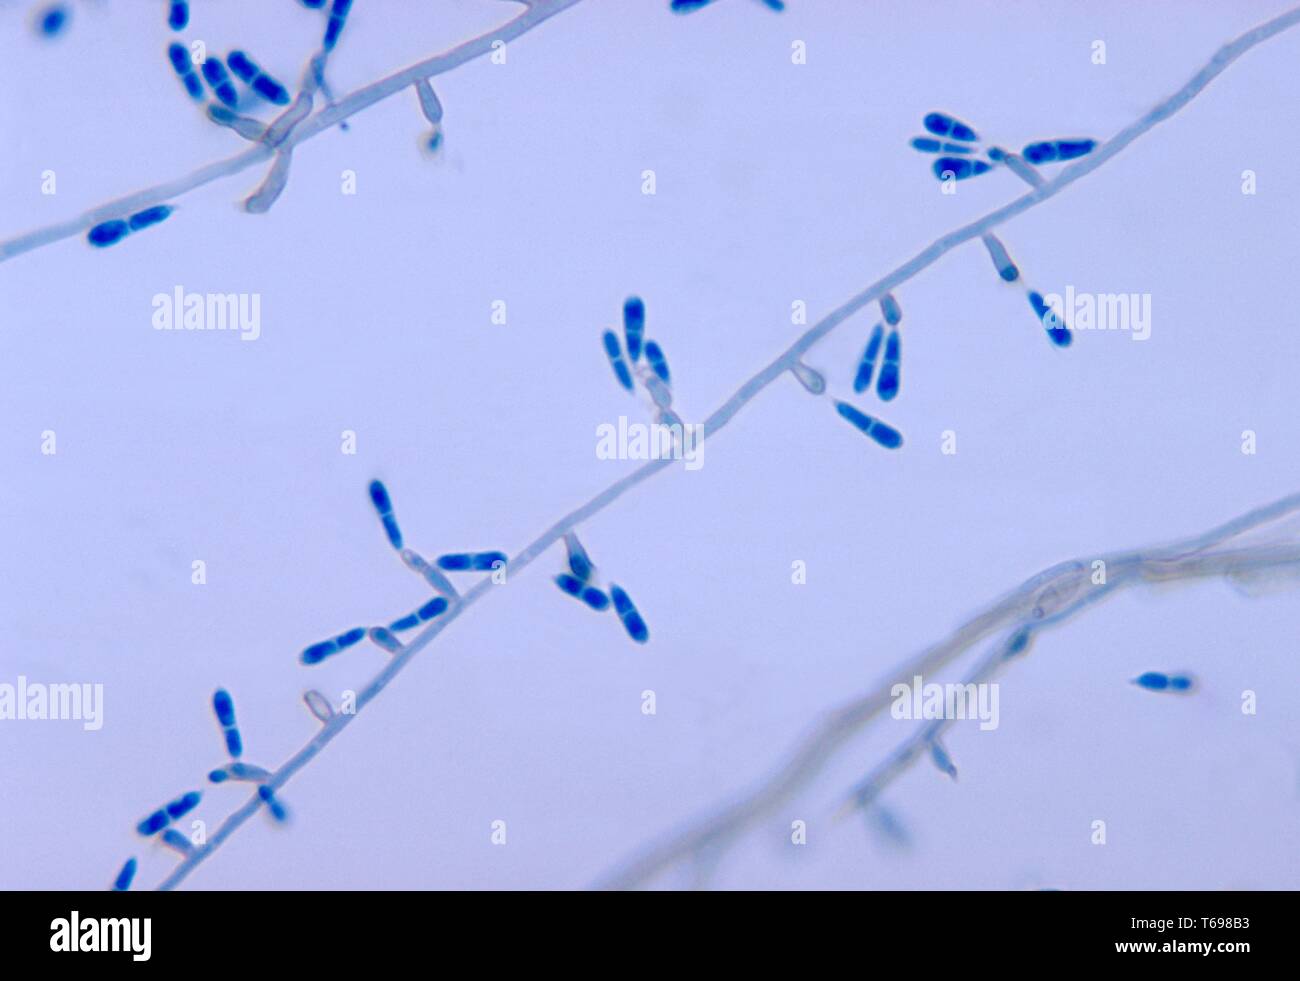 Photomicrograph von konidien auf conidiophores des Pilzes Ochroconis gallopavum (Dactylaria gallopava) getrennt von der Türkei Küken Gehirn Gewebeproben, 1971. Bild mit freundlicher Genehmigung Zentren für Krankheitskontrolle und Prävention (CDC)/Dr Lucille George. () Stockfoto